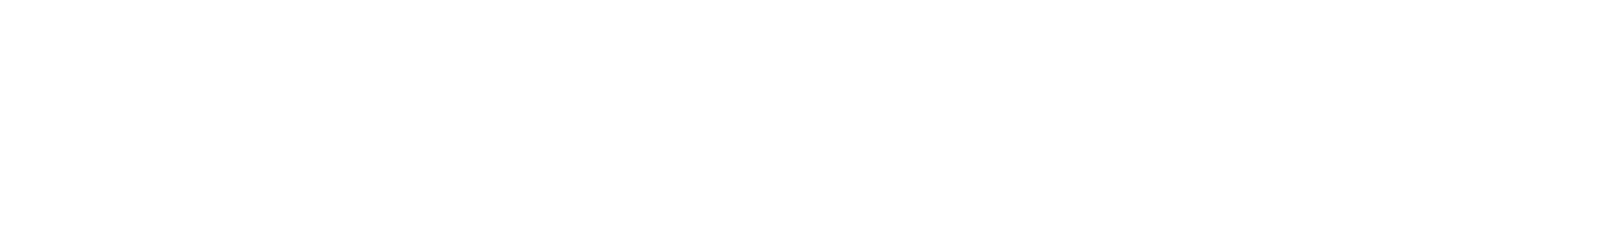 Glatfelter
 logo grand pour les fonds sombres (PNG transparent)